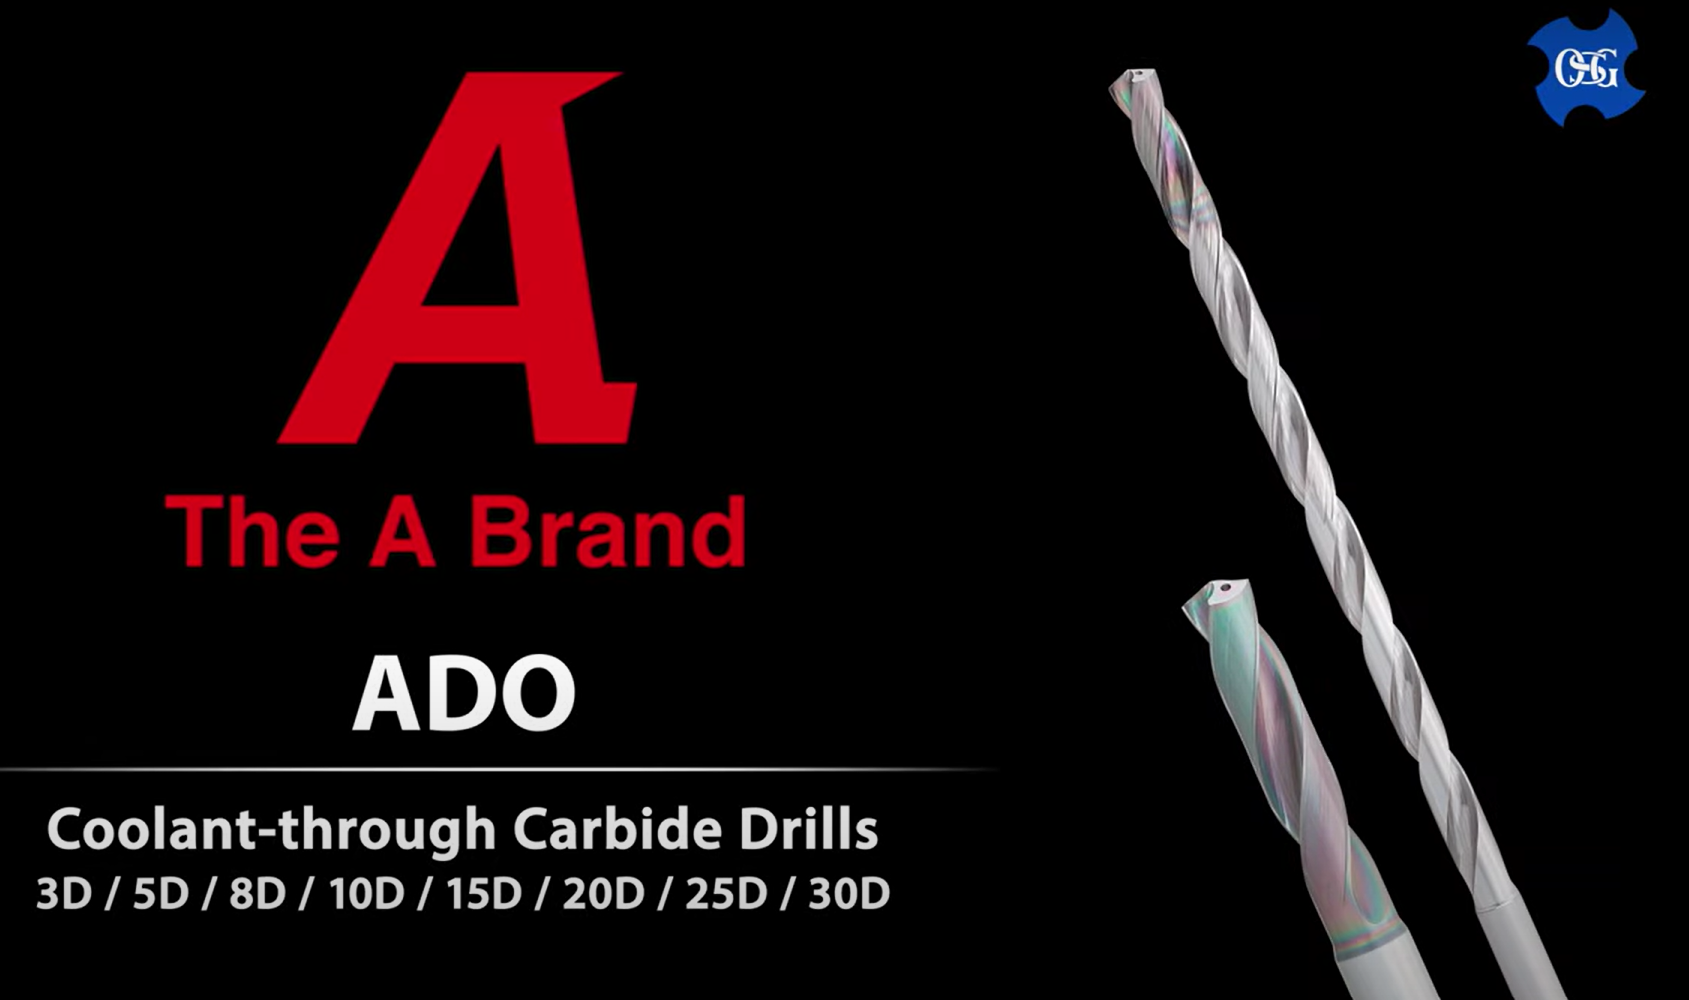 ADO (R Gash) Coolant-through Carbide Drill Series